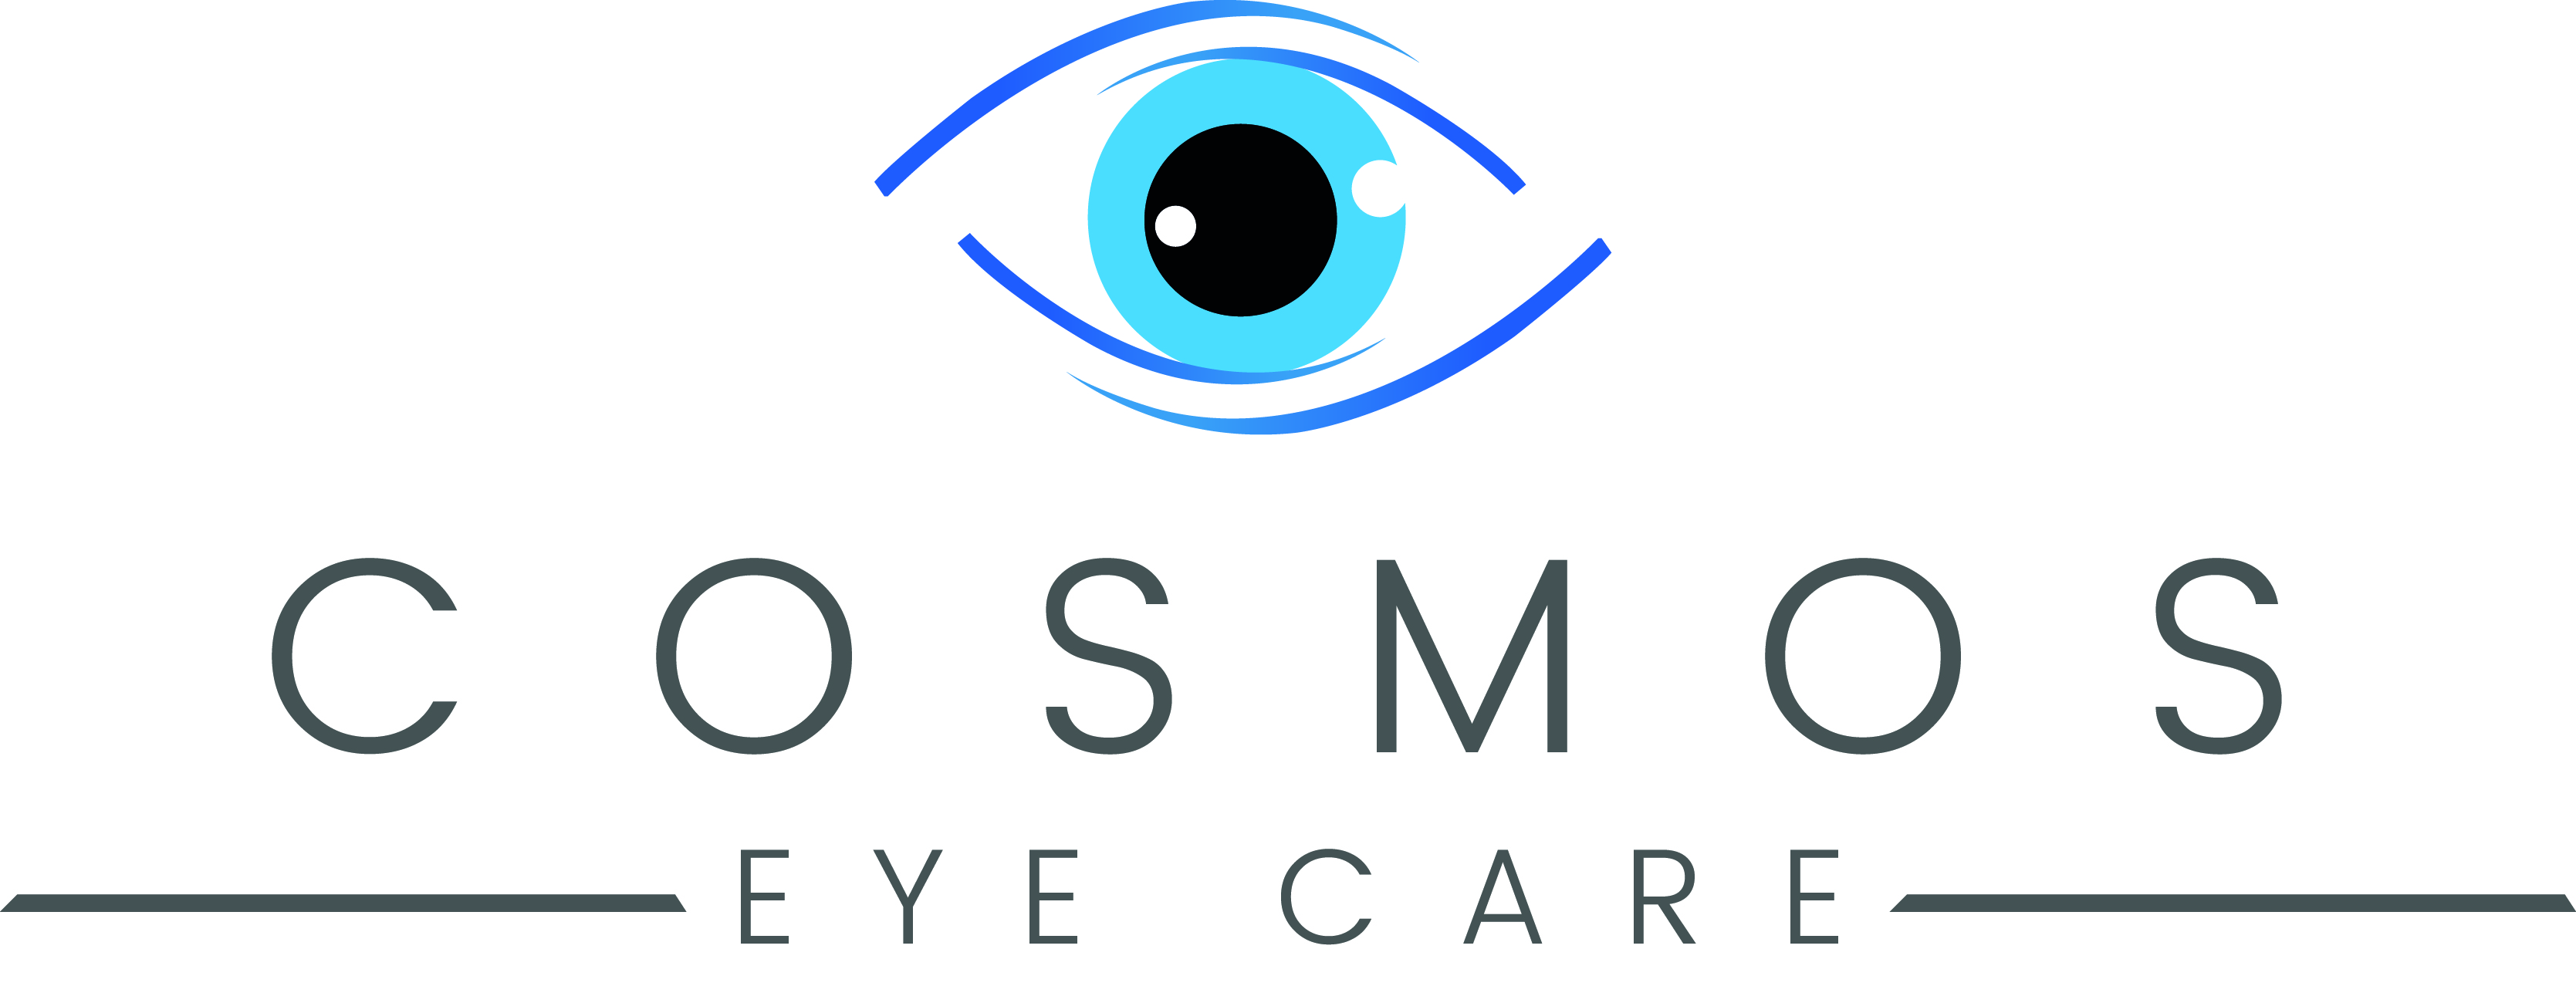 Cosmos Eye Care